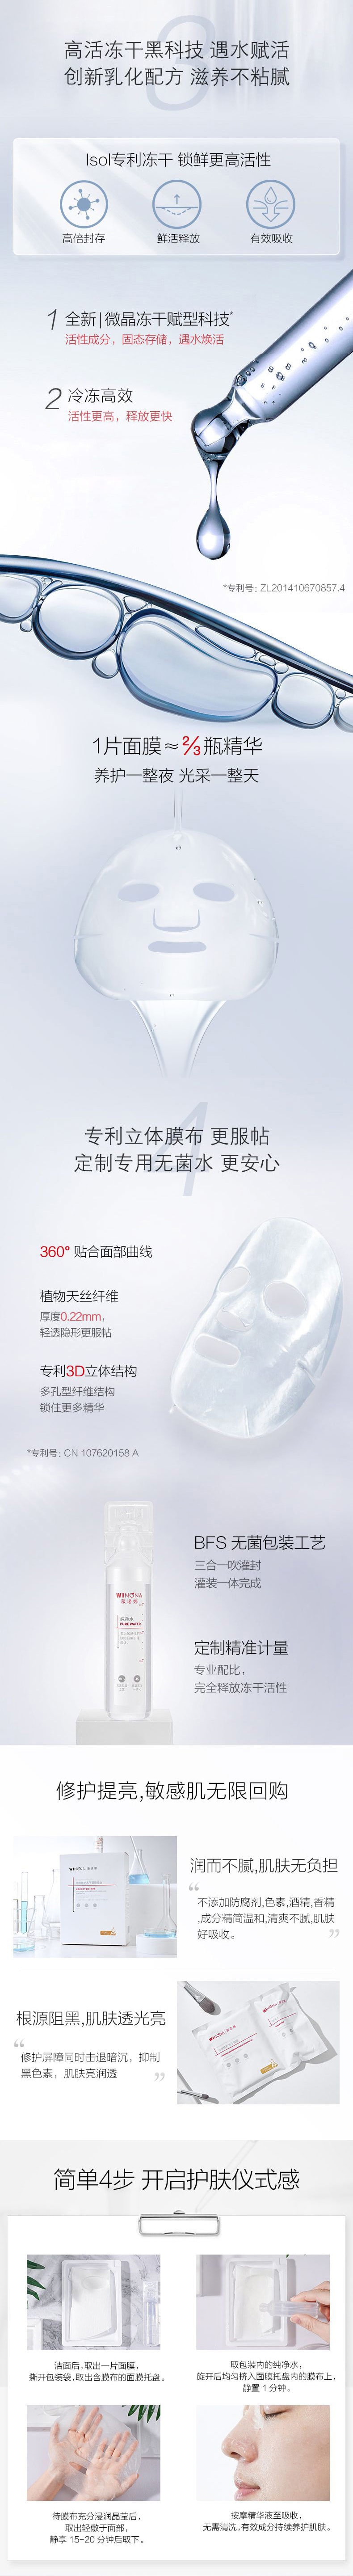 中國薇諾娜(WINONA)光感修護凍乾面膜6片/盒 1盒 保濕 面膜 亮白肌膚 提亮修護敏感肌【直降疊券疊滿贈】拉新價